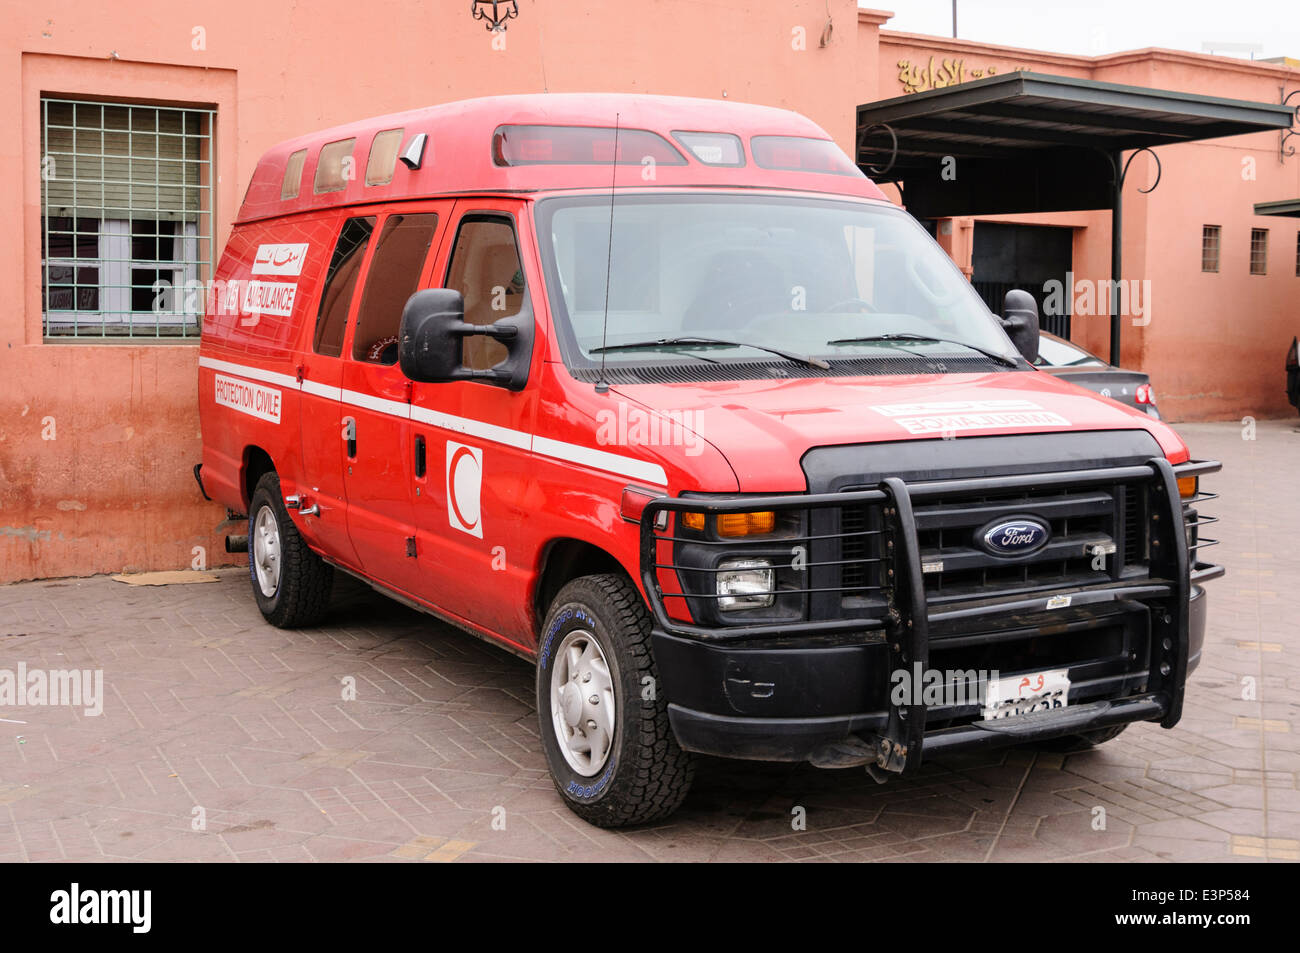 La ambulancia estacionada en Marrakech, Marruecos Foto de stock